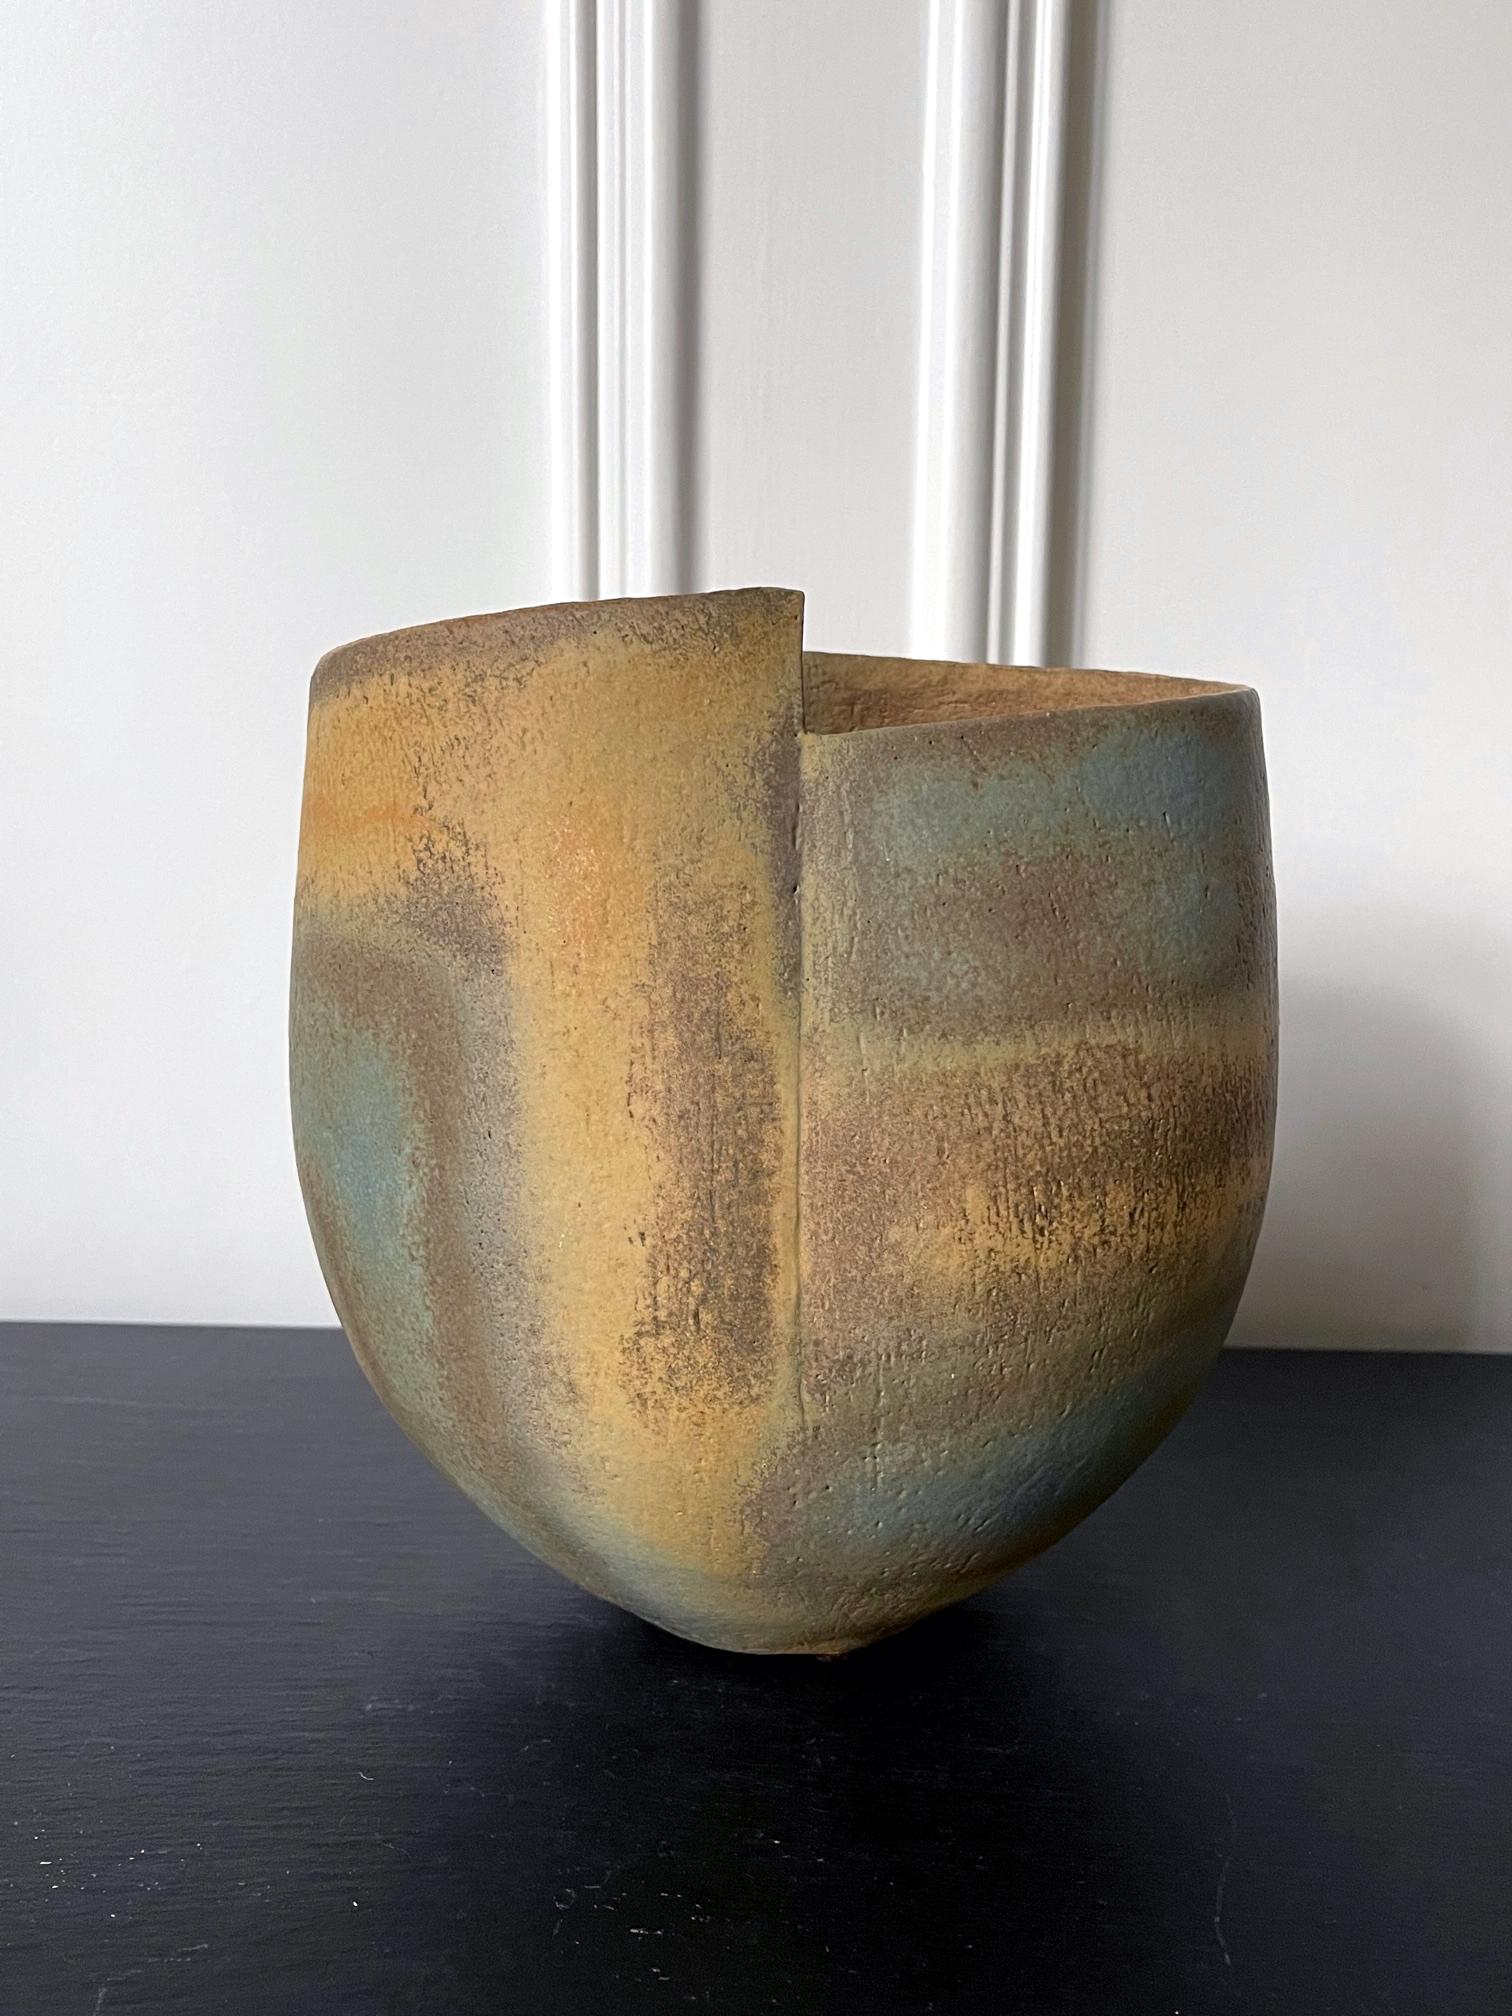 Un récipient en grès avec un design de bandes émaillées et bandées par le céramiste de studio britannique John Ward (1938-2023) vers les années 1980. Le récipient prend sa forme simple mais distincte entre un bol profond et un vase. Il présente un